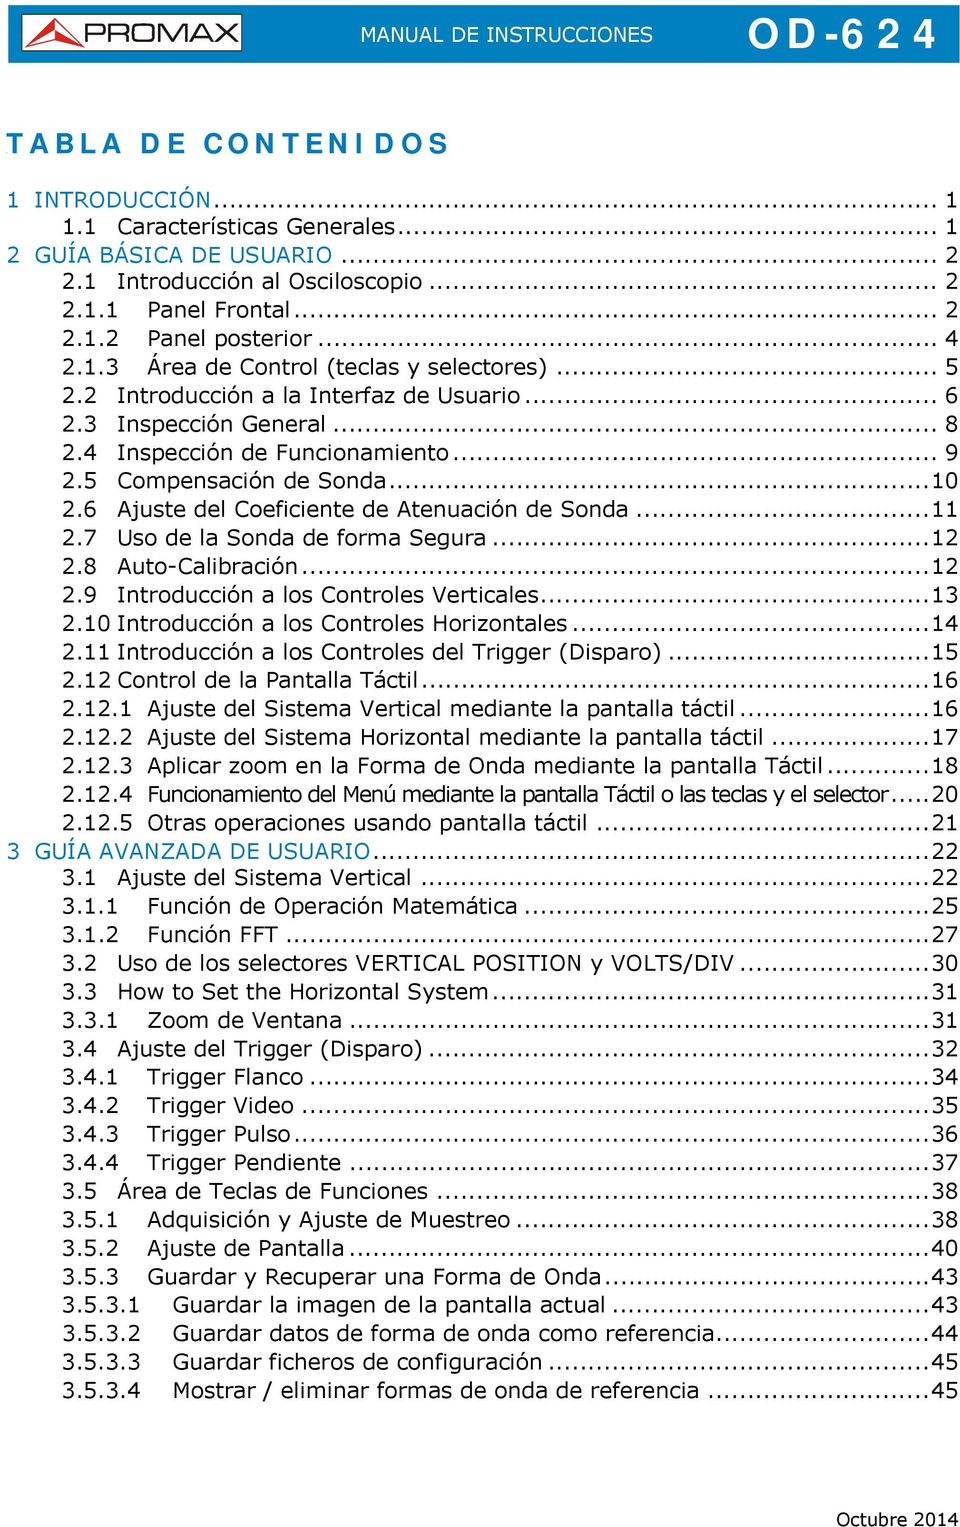 6 Ajuste del Coeficiente de Atenuación de Sonda...11 2.7 Uso de la Sonda de forma Segura...12 2.8 Auto-Calibración...12 2.9 Introducción a los Controles Verticales...13 2.